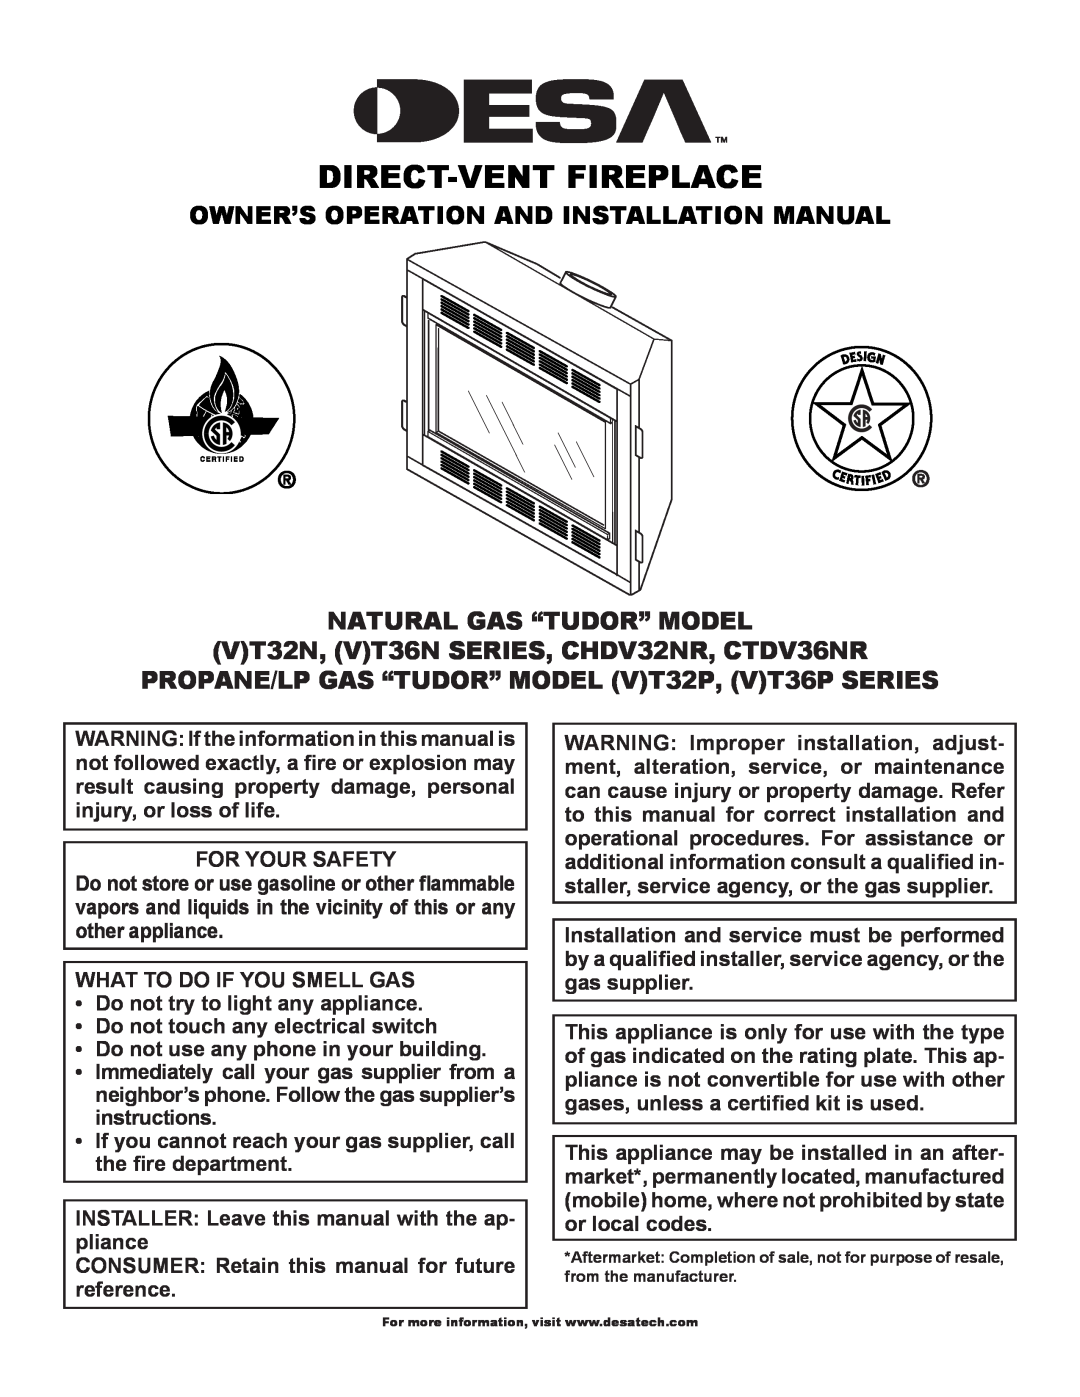 Desa (V)T36P SERIES, (V)T32P installation manual Owner’S Operation And Installation Manual, Natural Gas “Tudor” Model 